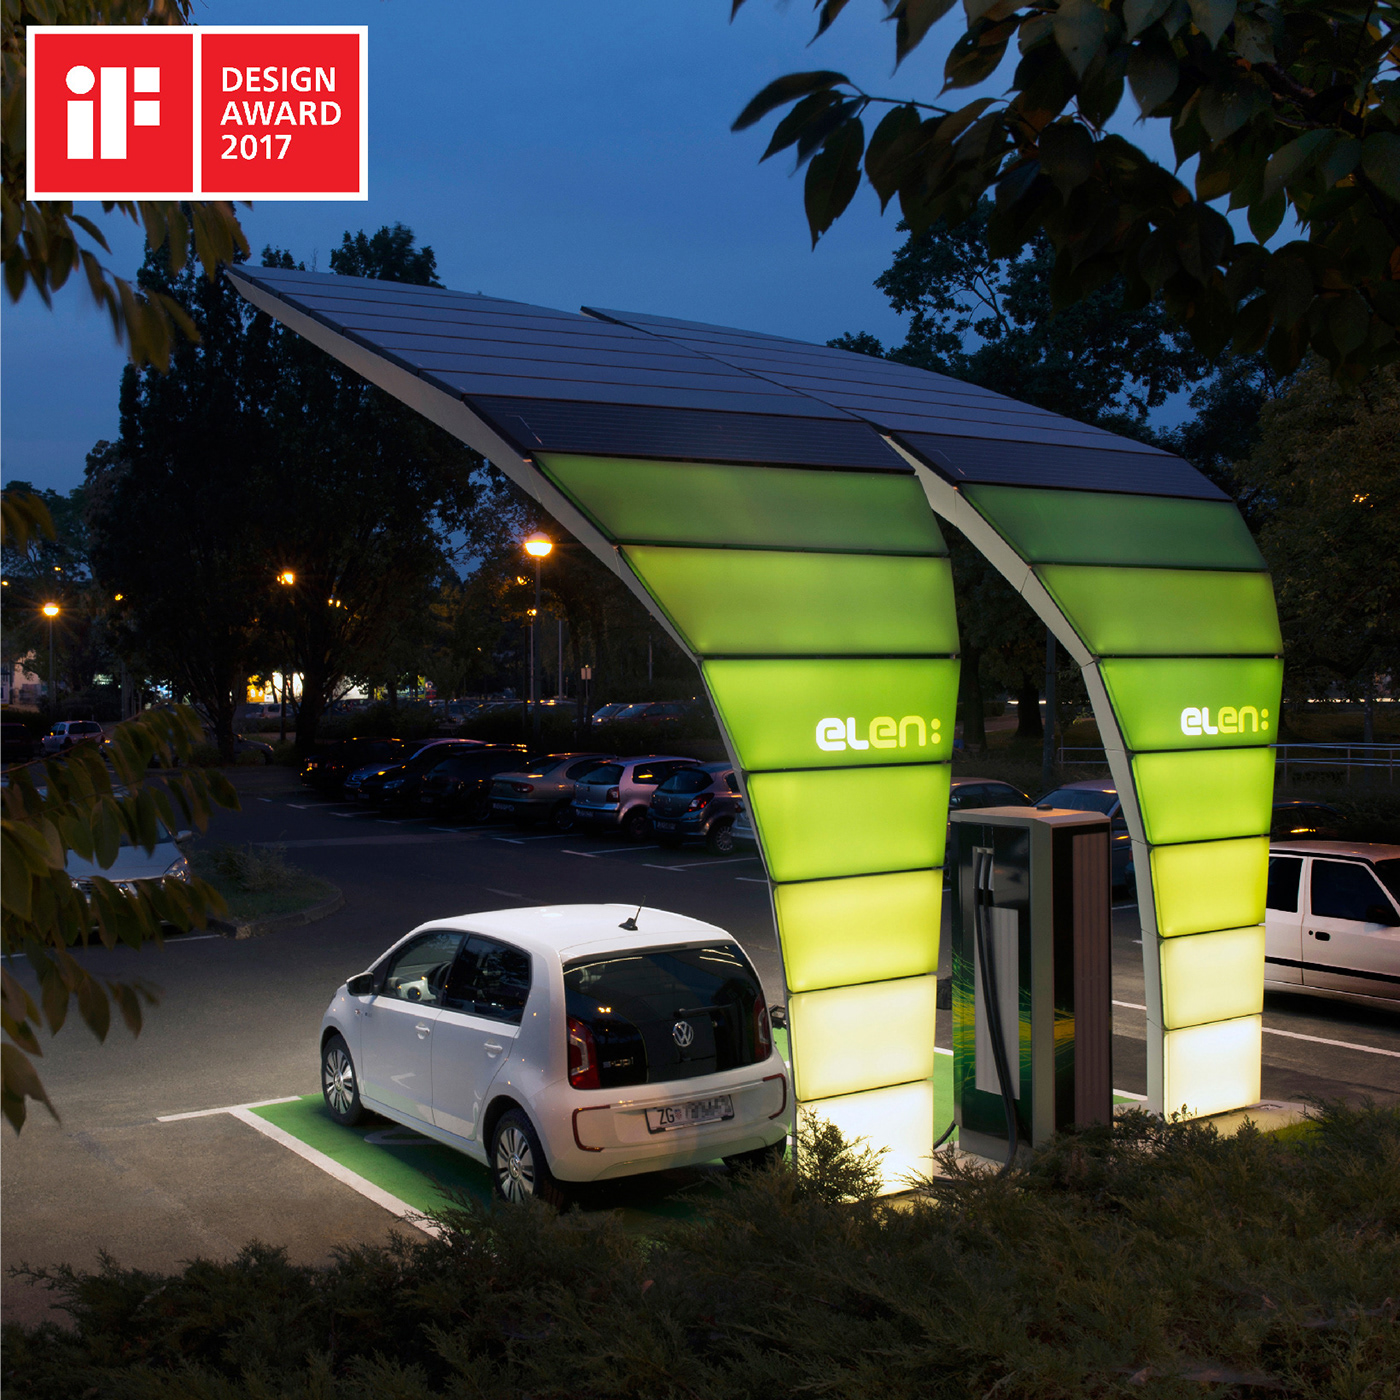 Product design / Elen Leaf ev solar charging station on Behance